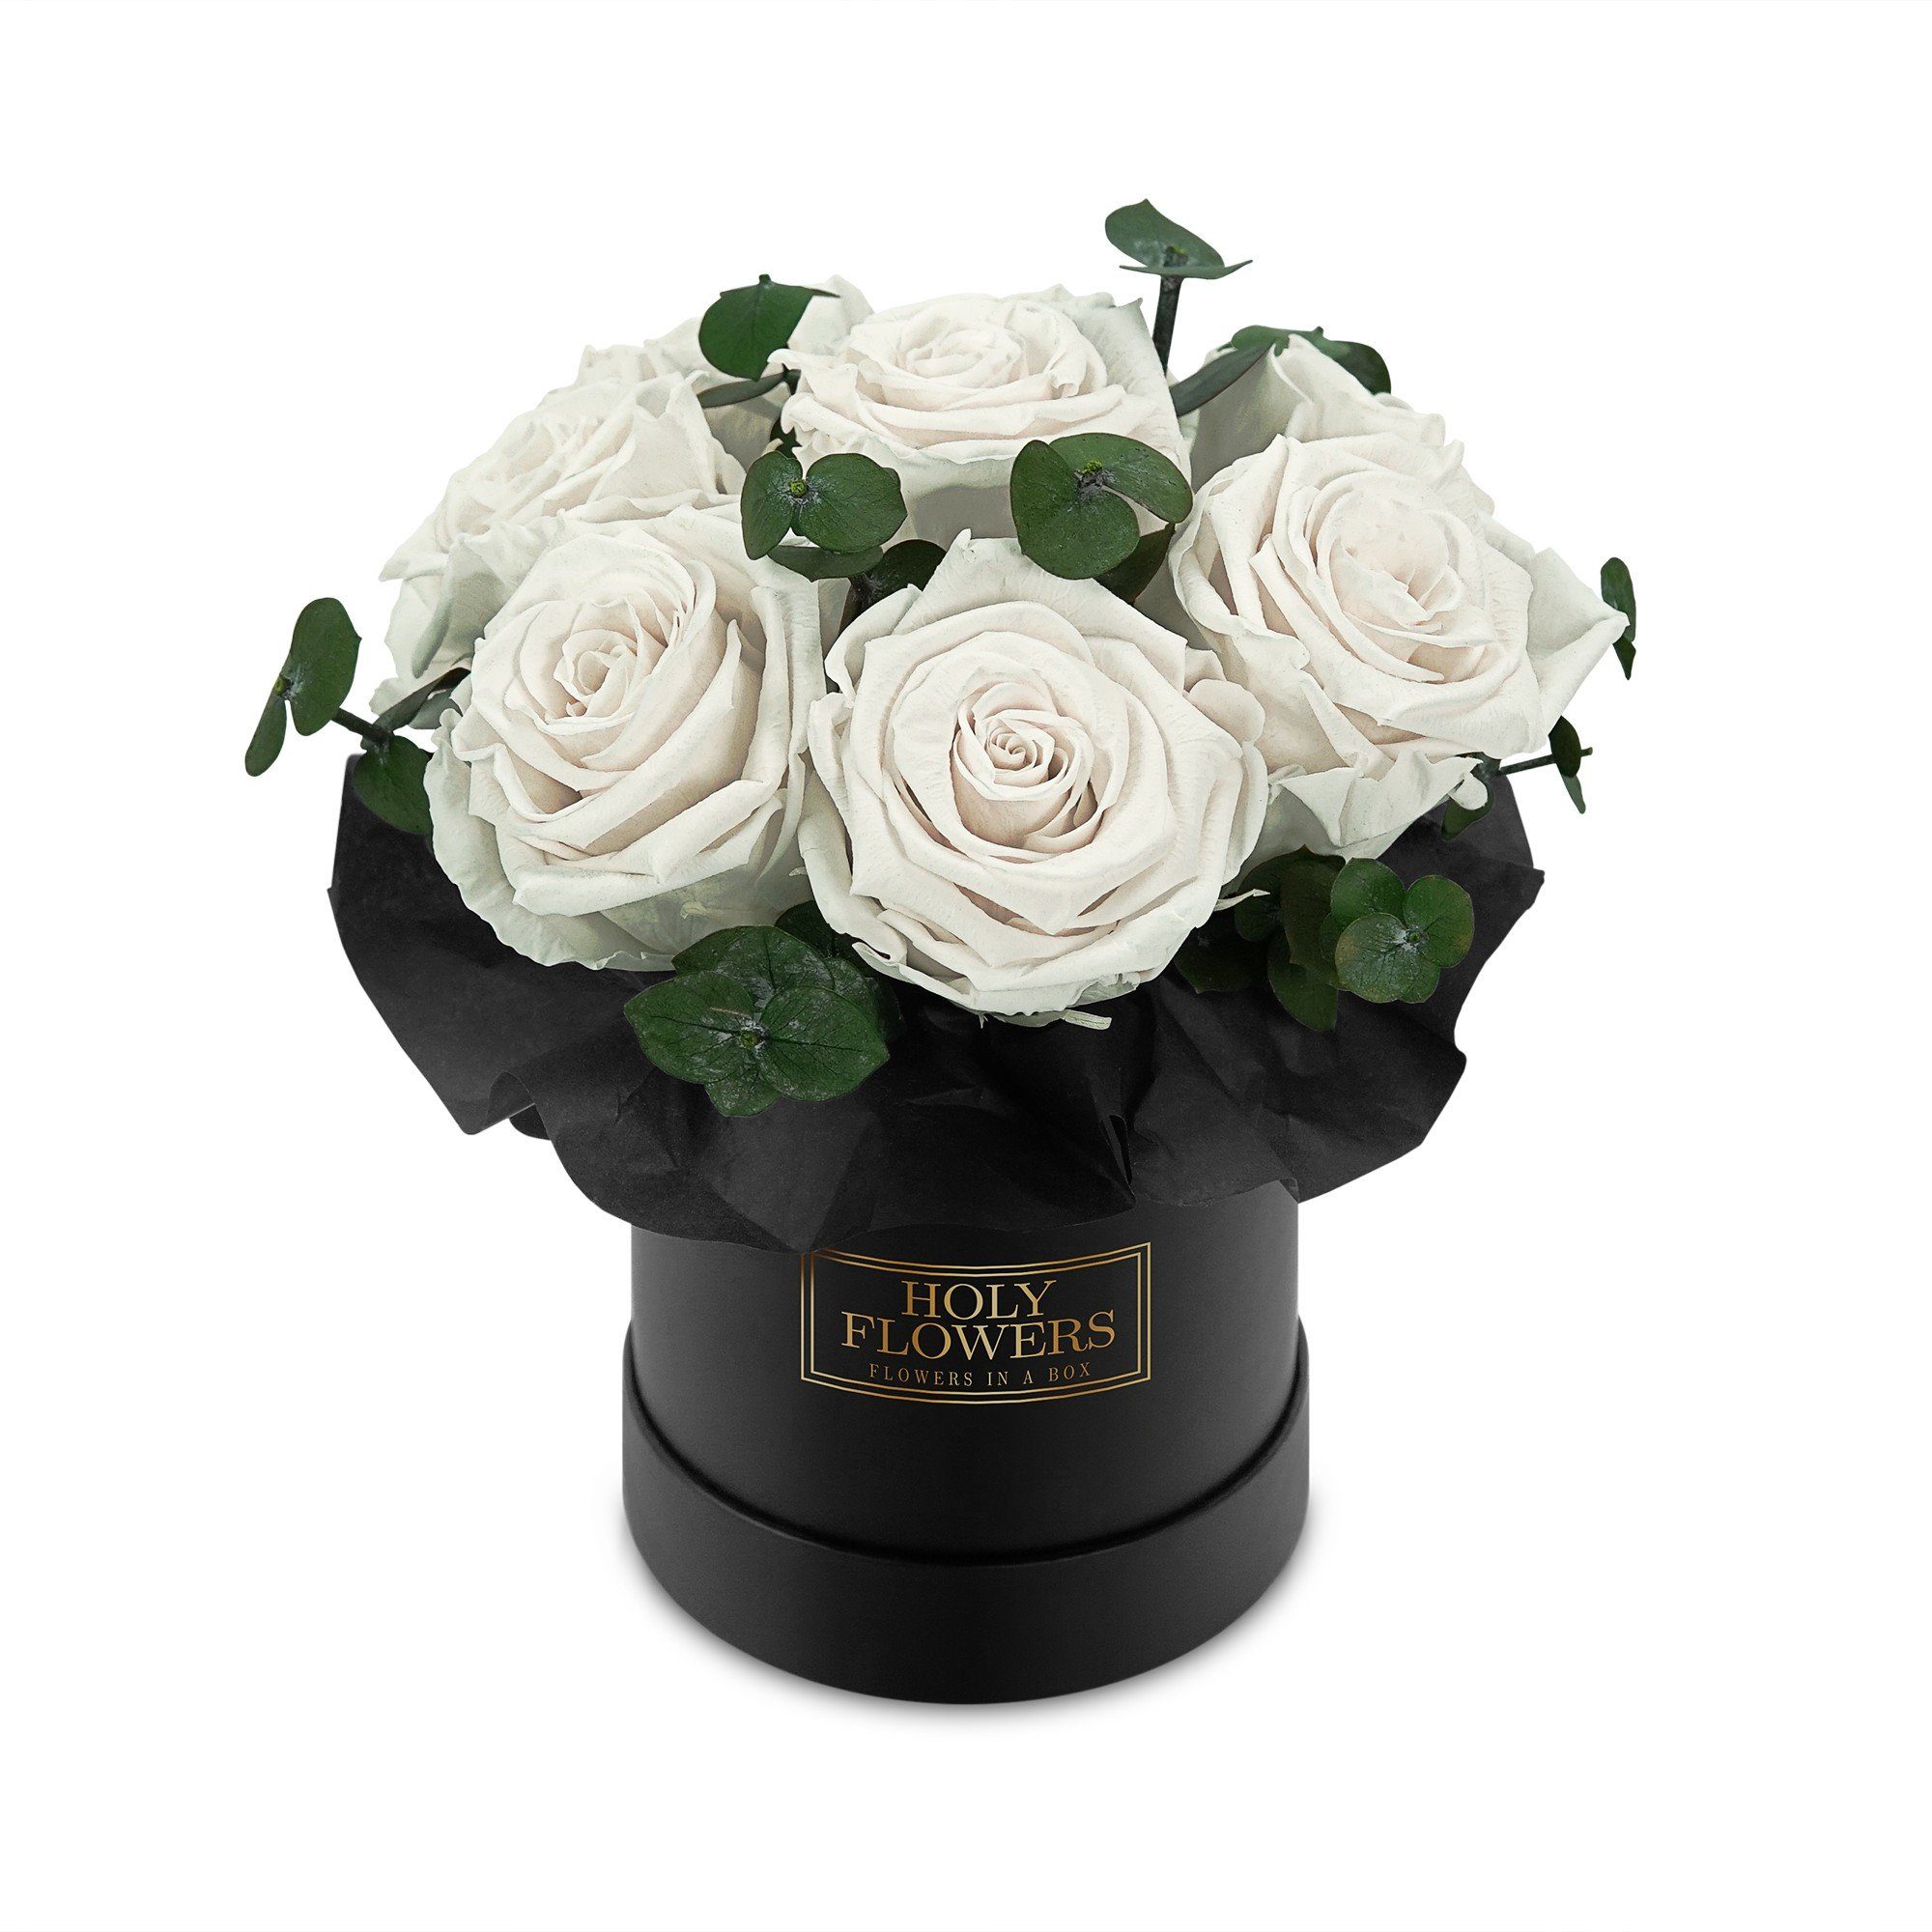 Kunstblume Rosenbox Bouquet mit 7-9 Infinity Rosen I 3 Jahre haltbar I Echte, duftende konservierte Blumen I by Raul Richter Rose, Holy Flowers Weiß